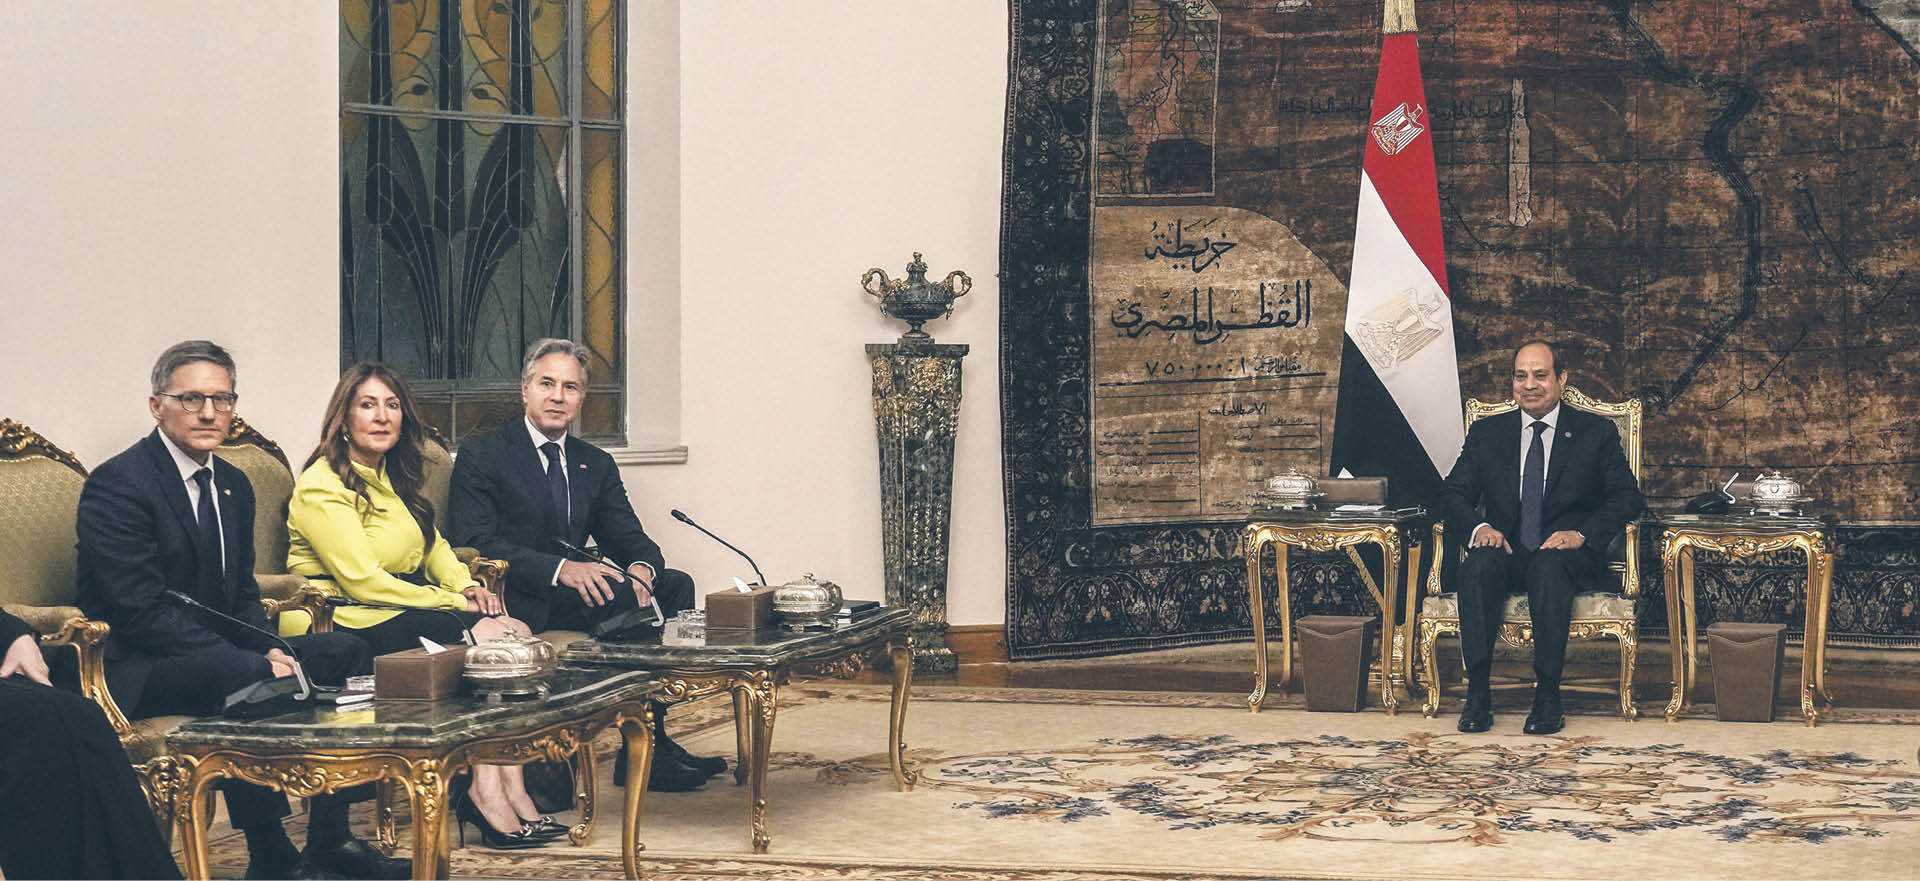 Spotkanie szefa amerykańskiej dyplomacji Antony’ego Blinkena z prezydentem Egiptu Abd al-Fattahem as-Sisim